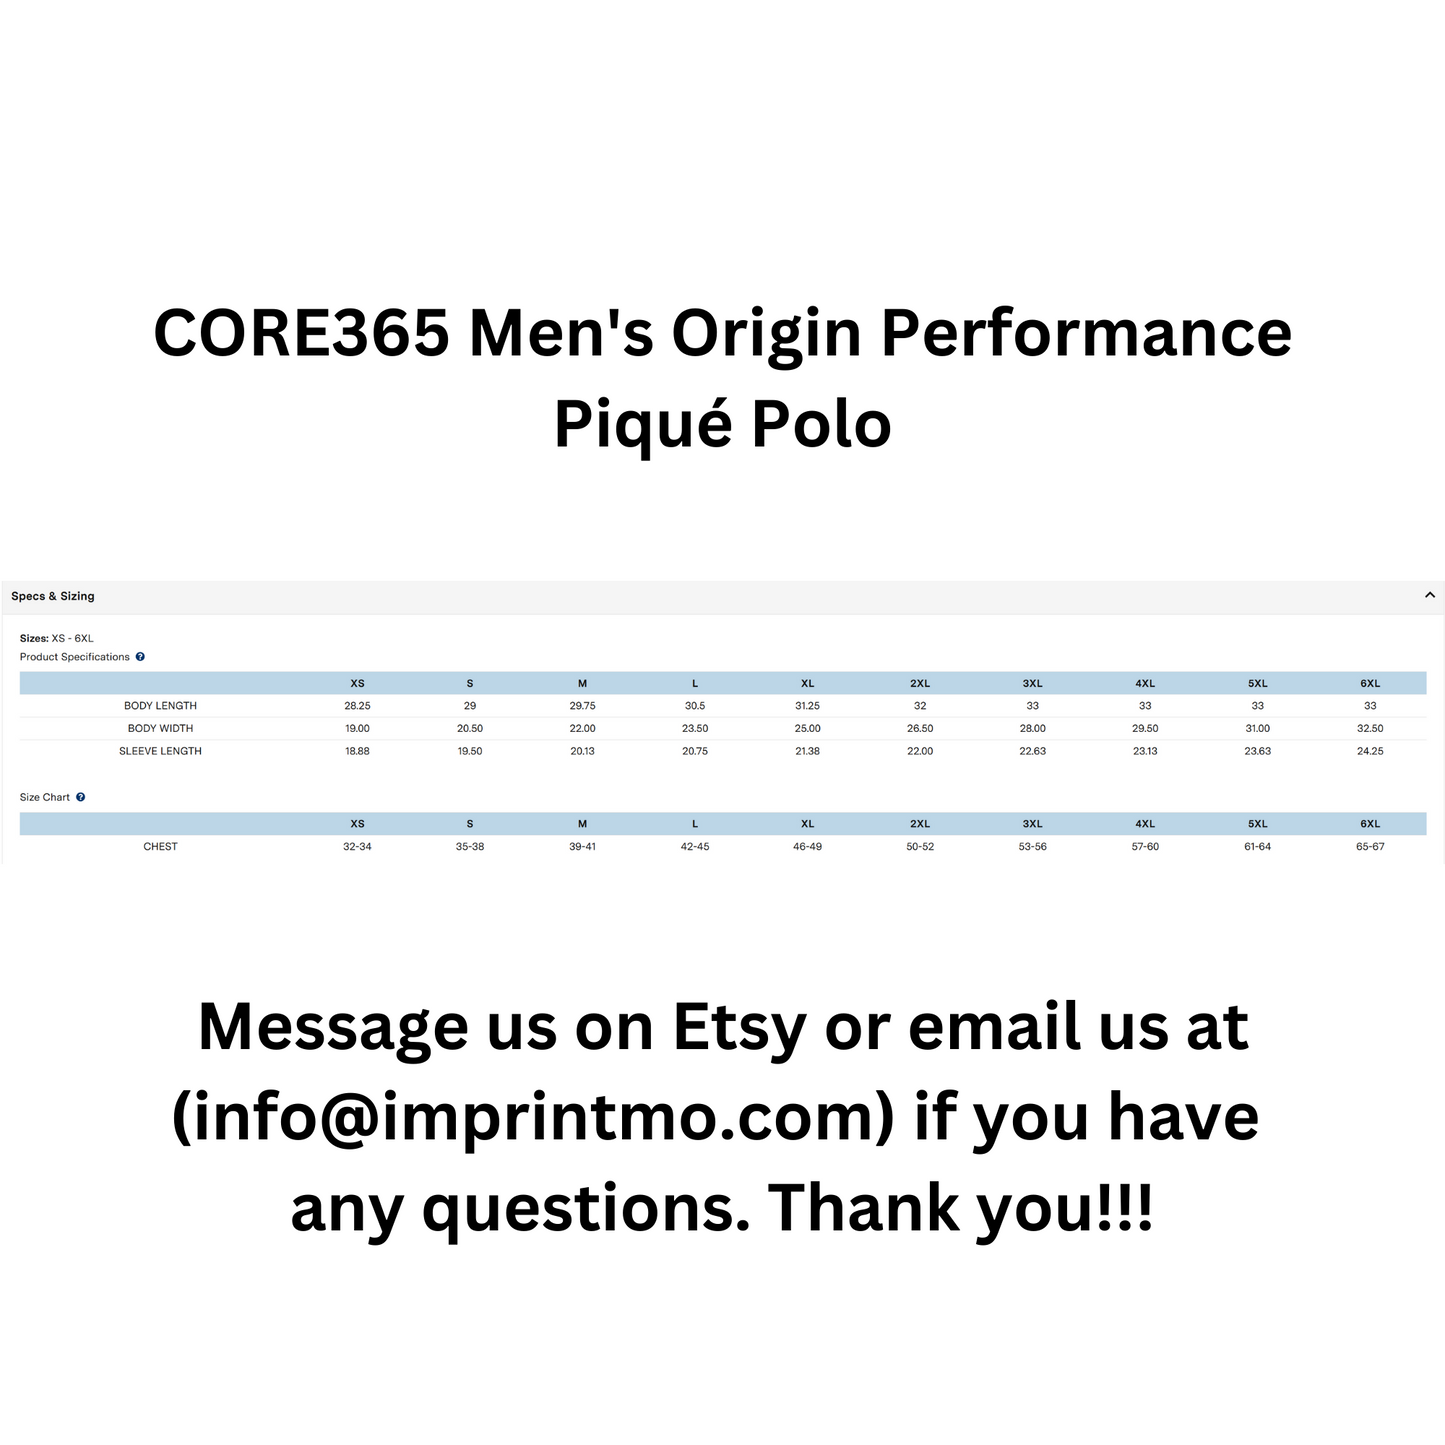 CORE365 Men's Origin Performance Piqué Polo